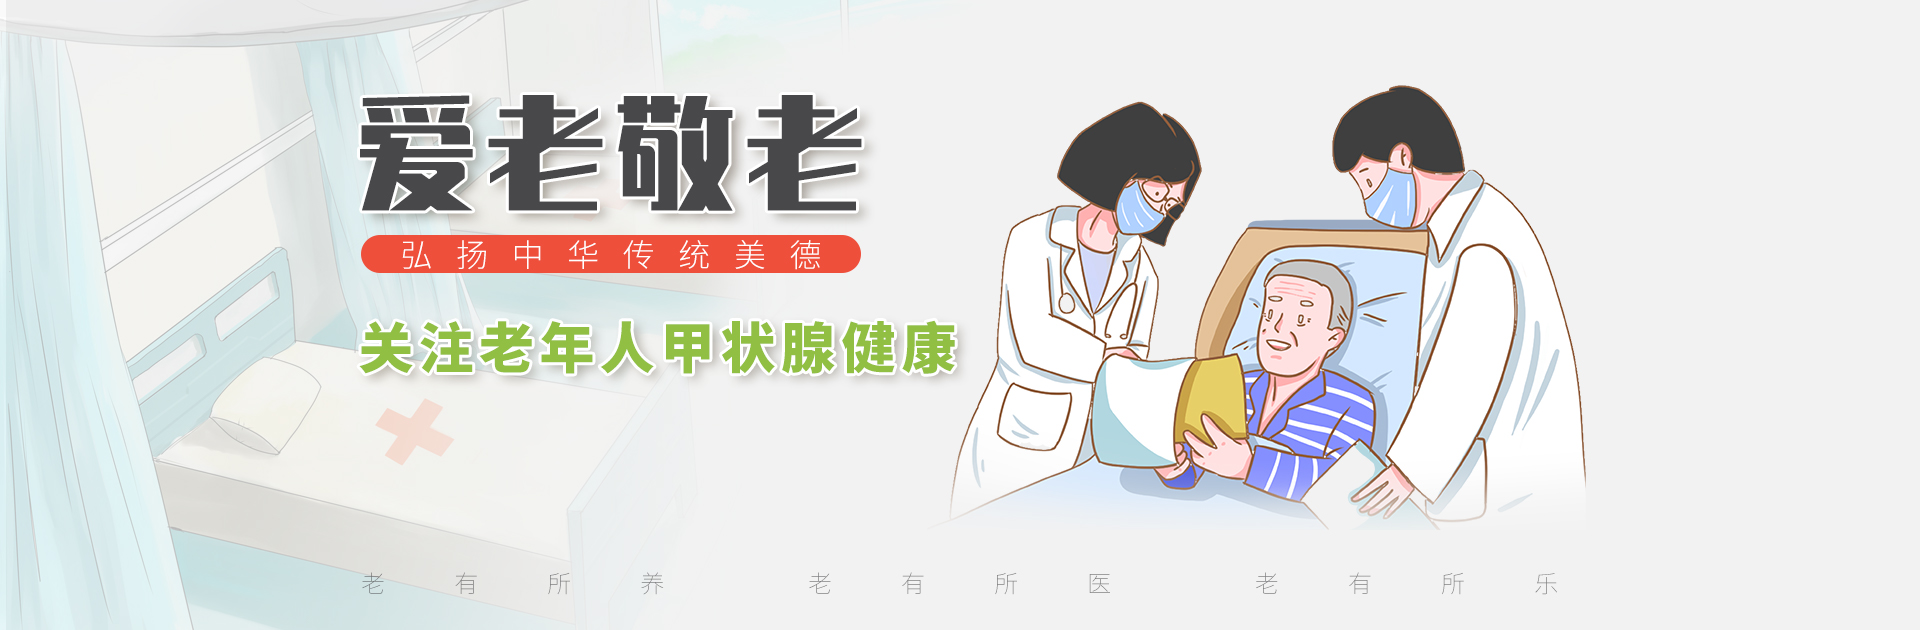 北京霍普医院-甲状腺疾病防治专项基金义诊活动